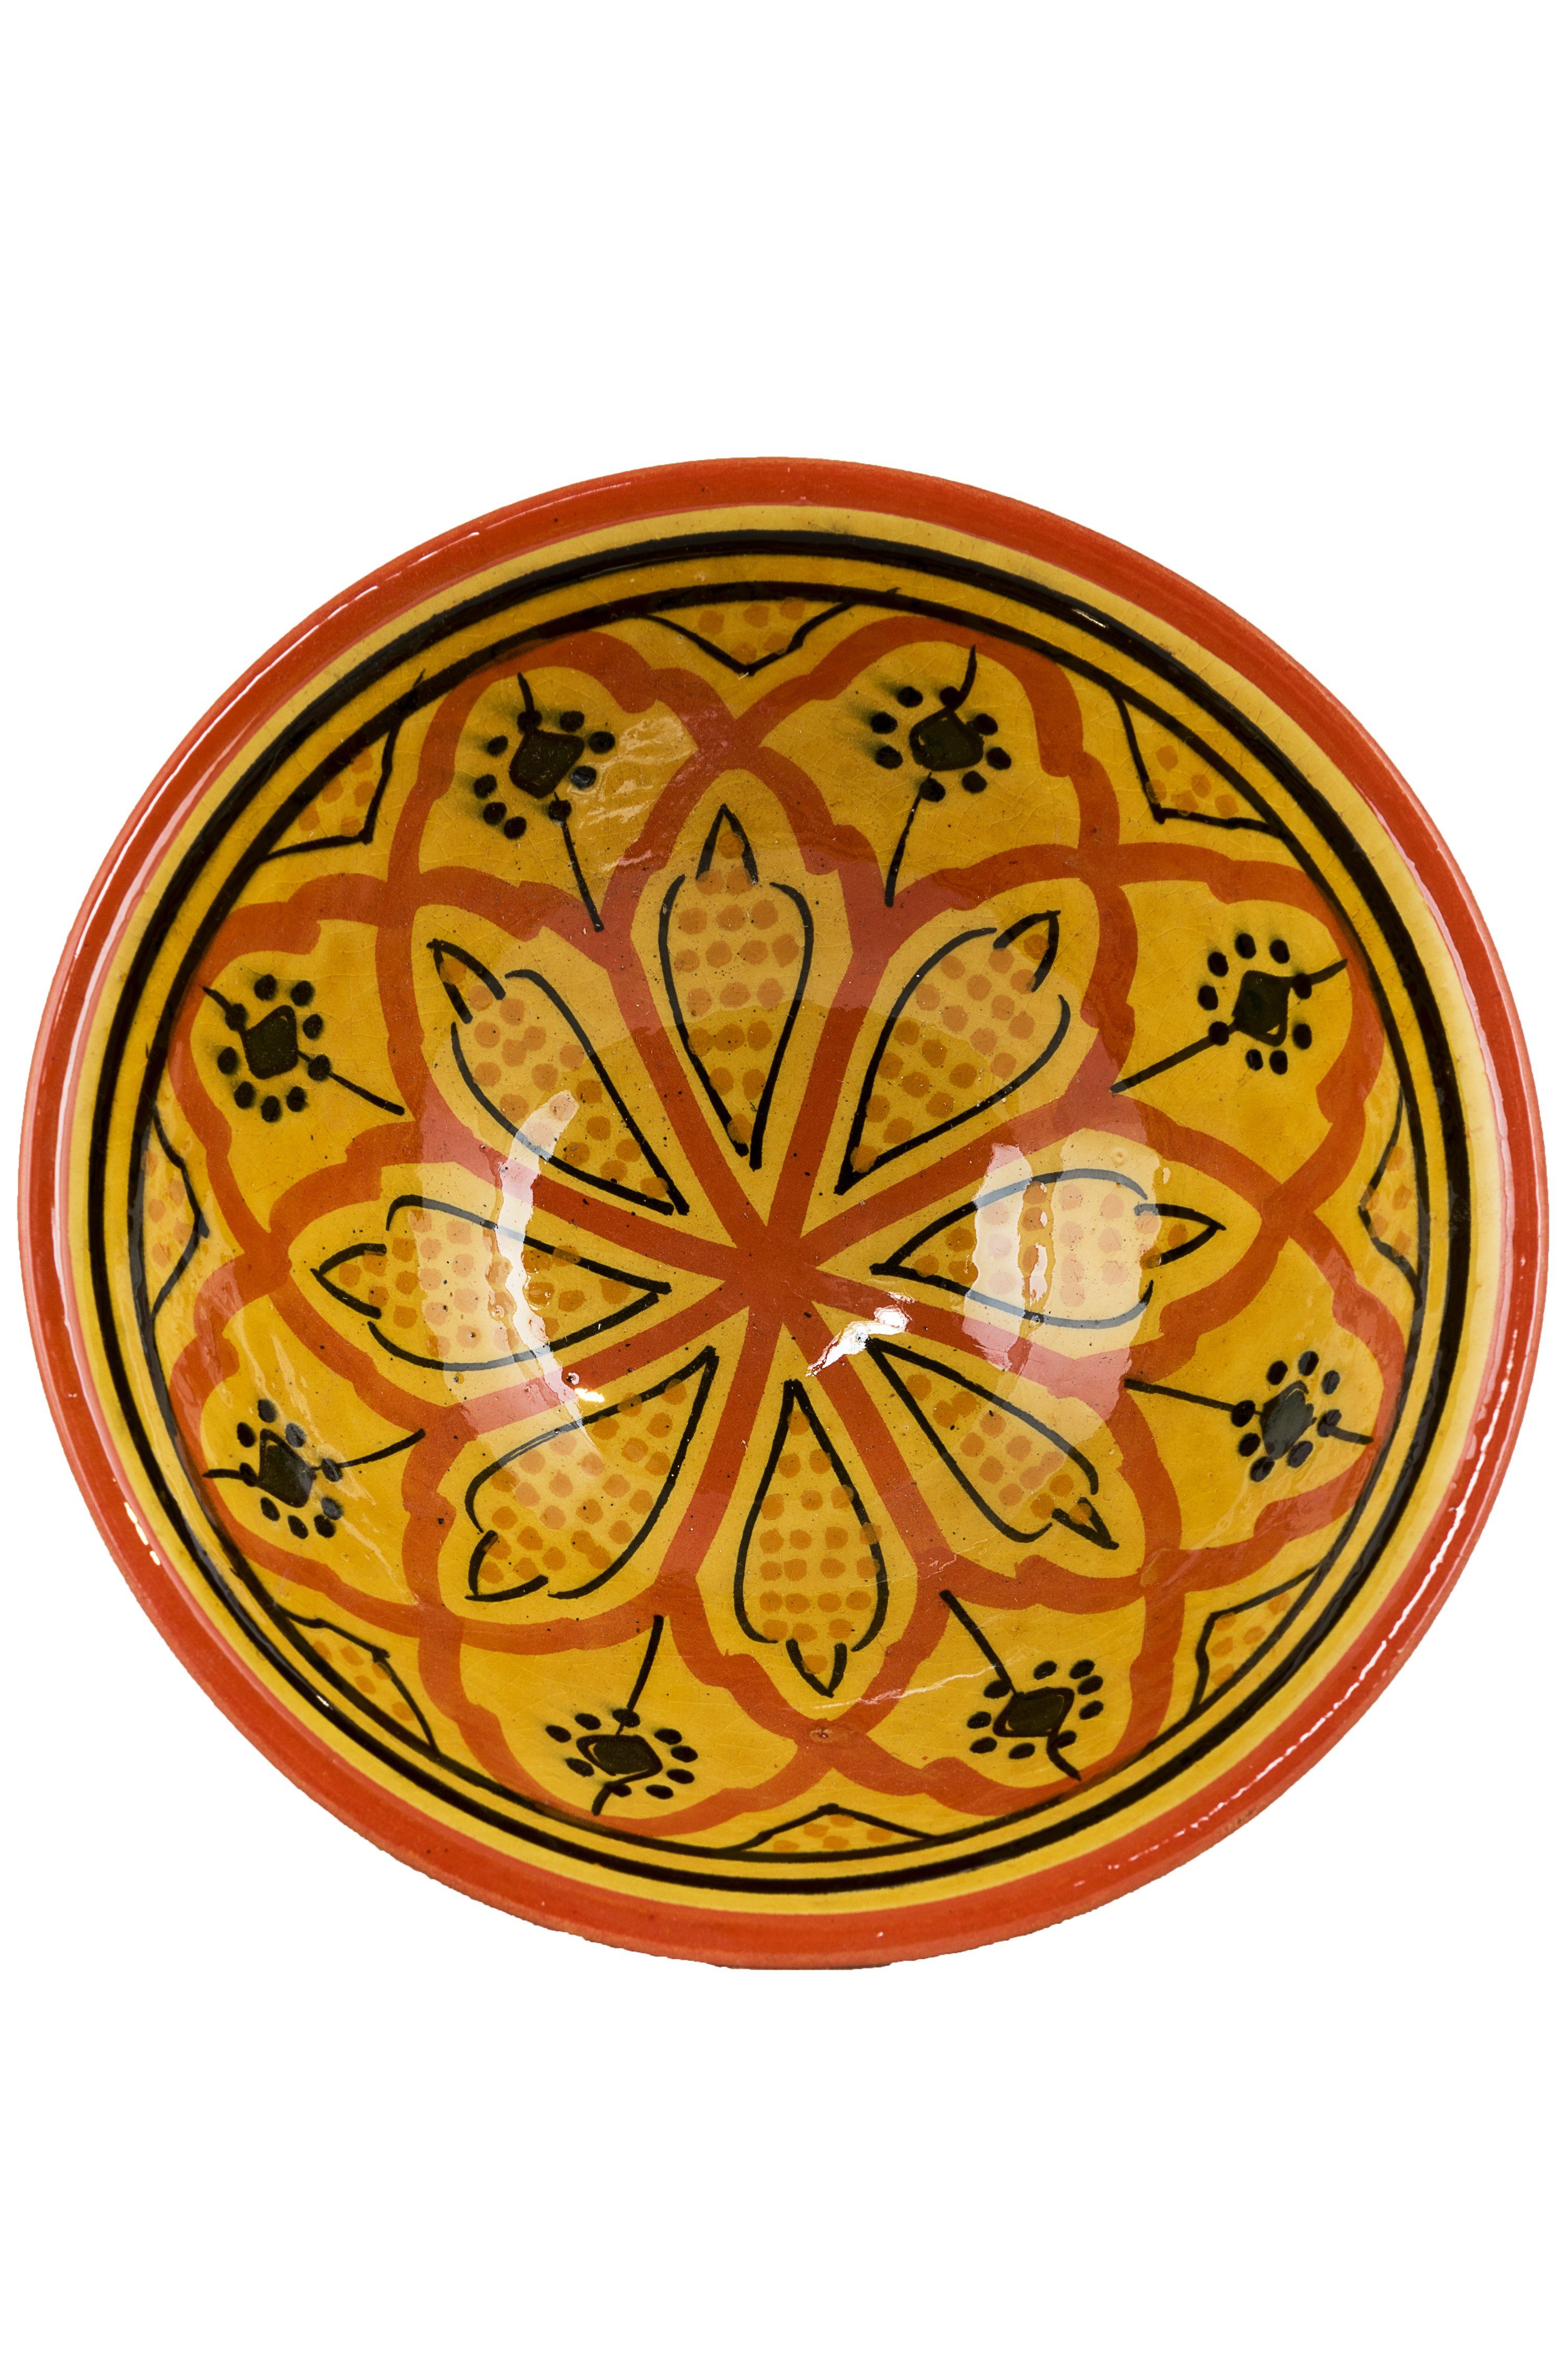 Marrakesch Orient & Mediterran Interior Dekoschale Orientalische Keramikschale Schale Rund Amoda Ø 15cm Groß (1 Schüssel), handbemalt